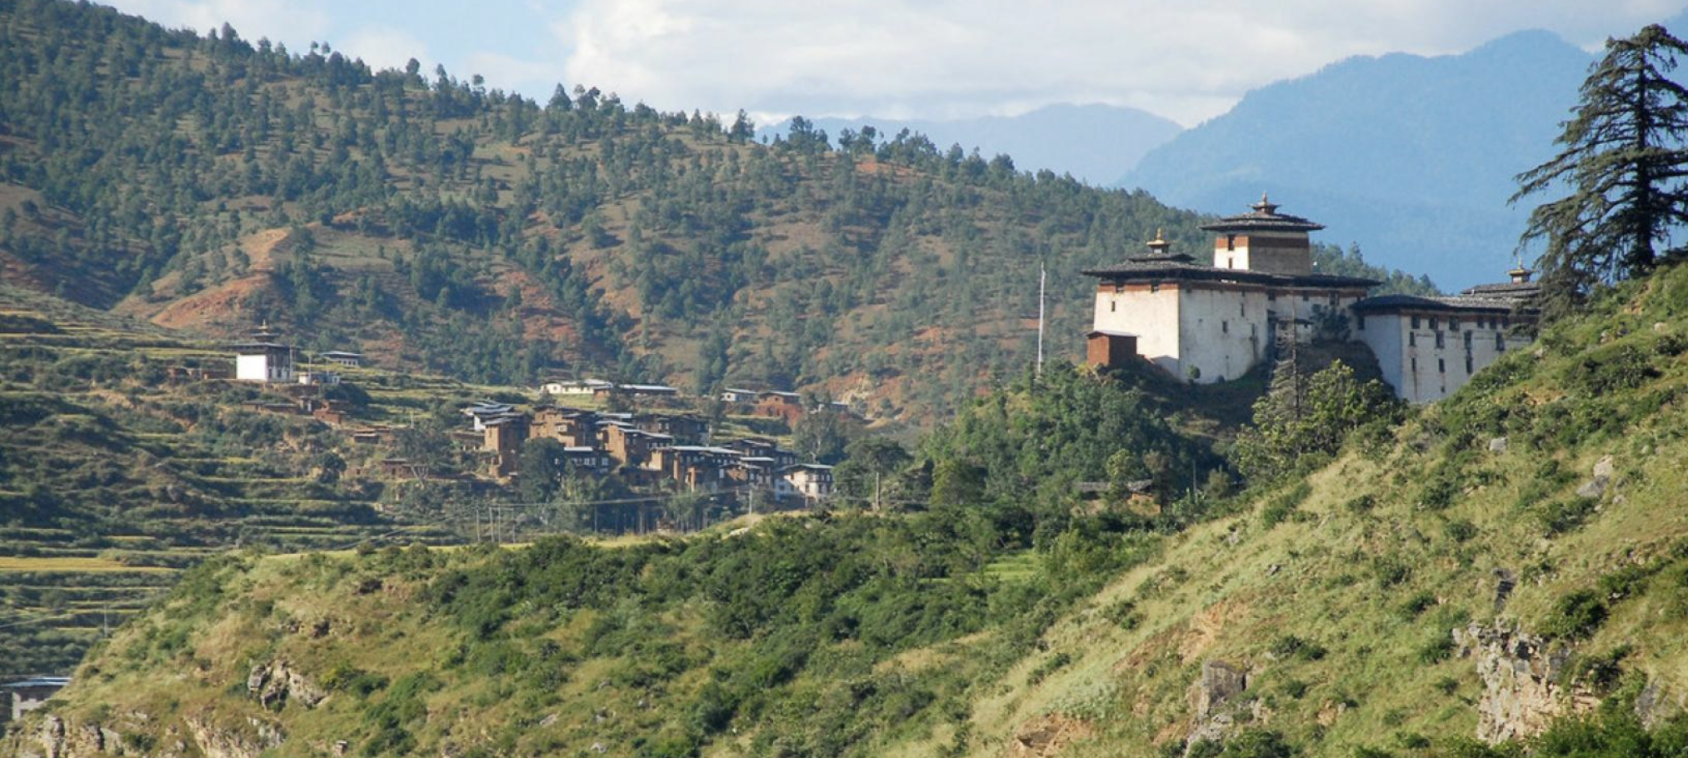 Vista panorámica del paisaje de un pueblo remoto en una región montañosa.